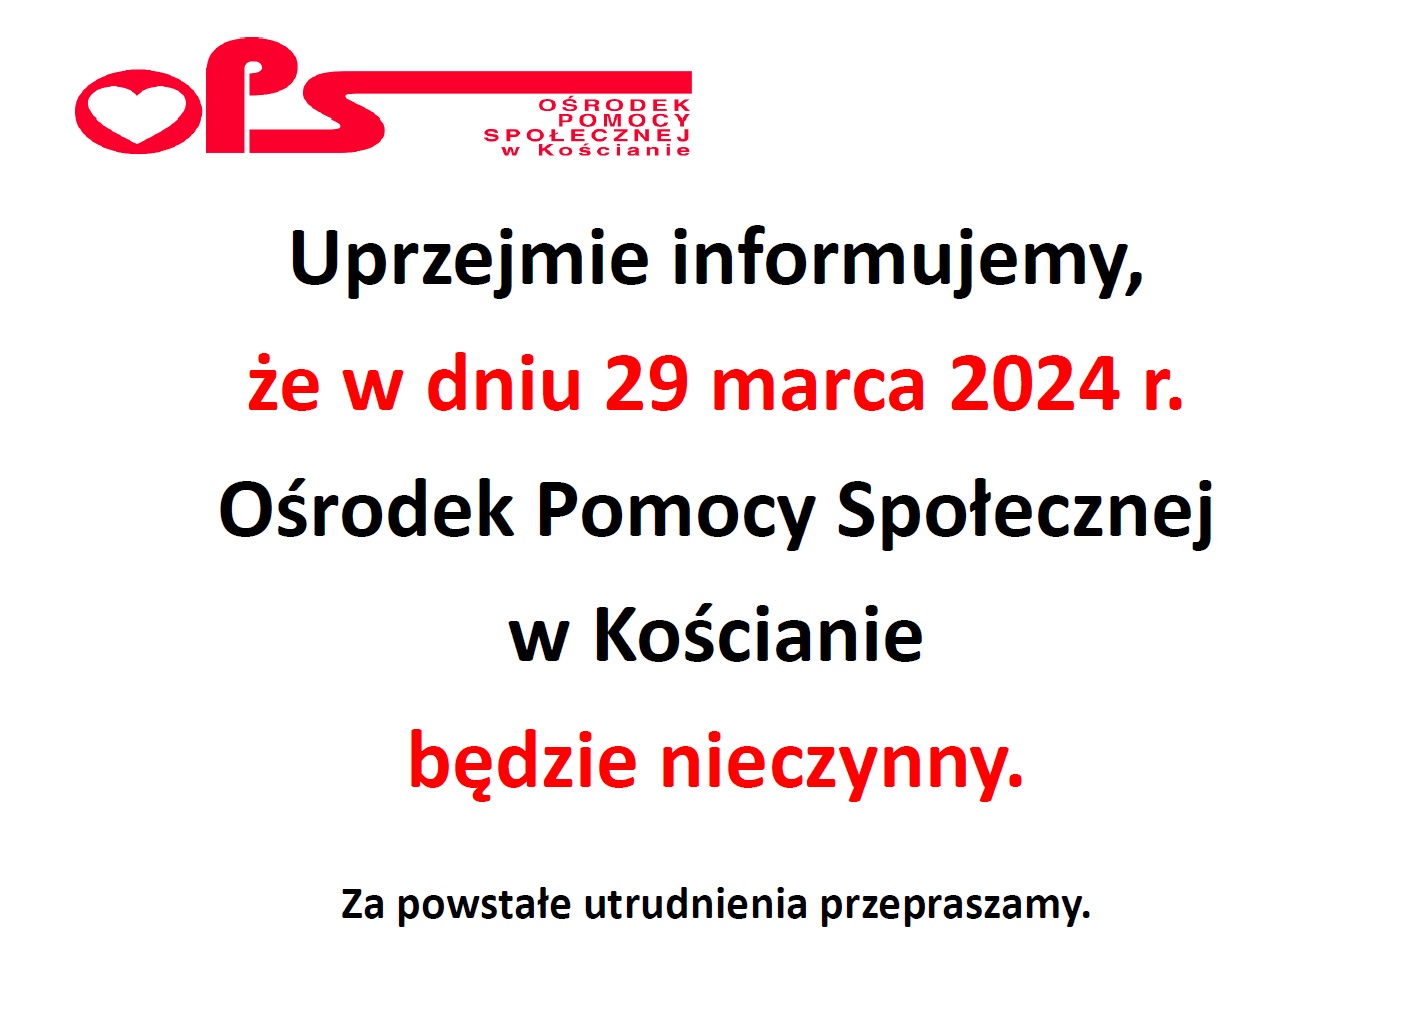 TEKST GRAFIKI: Uprzejmie informujemy, że w dniu 29 marca 2024 r. Ośrodek Pomocy Społecznej w Kościanie będzie nieczynny. Za powstałe utrudnienia przepraszamy.